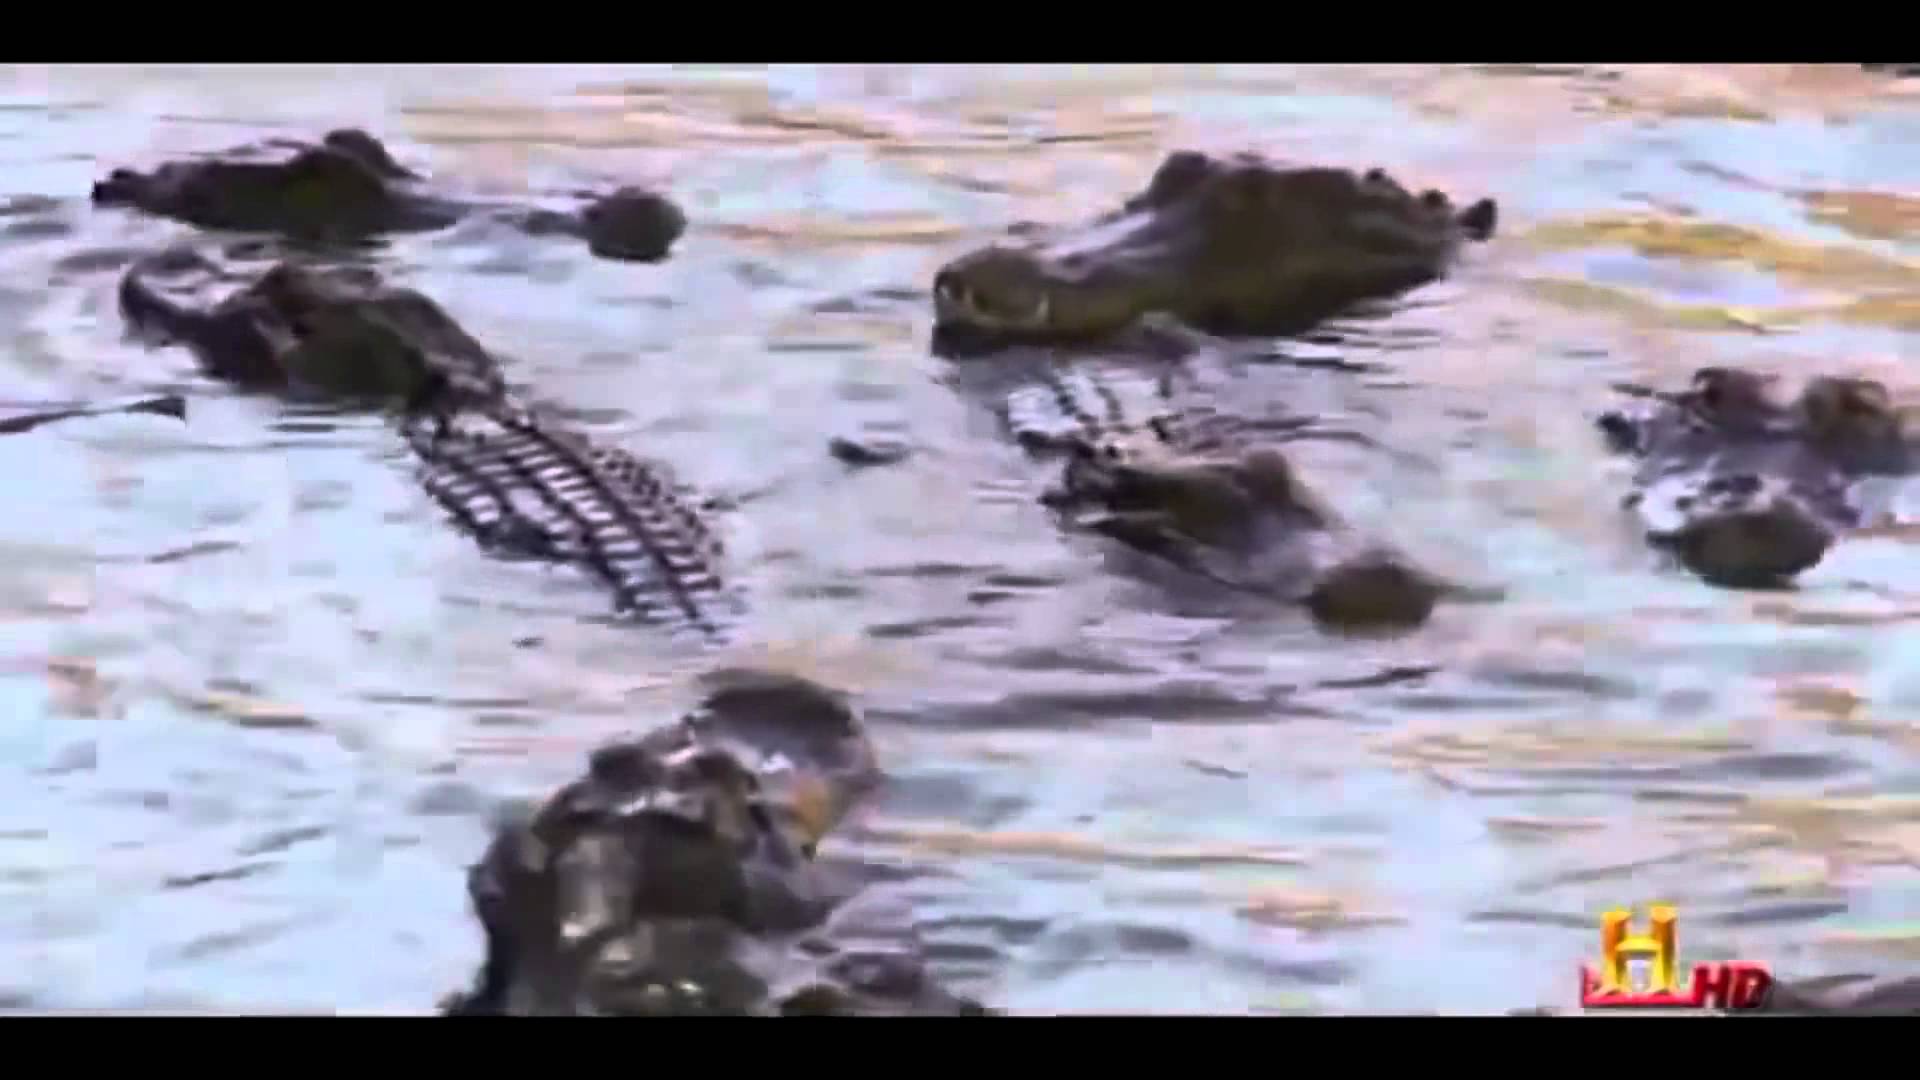 Giant Alligators living under New York – Full Documentary